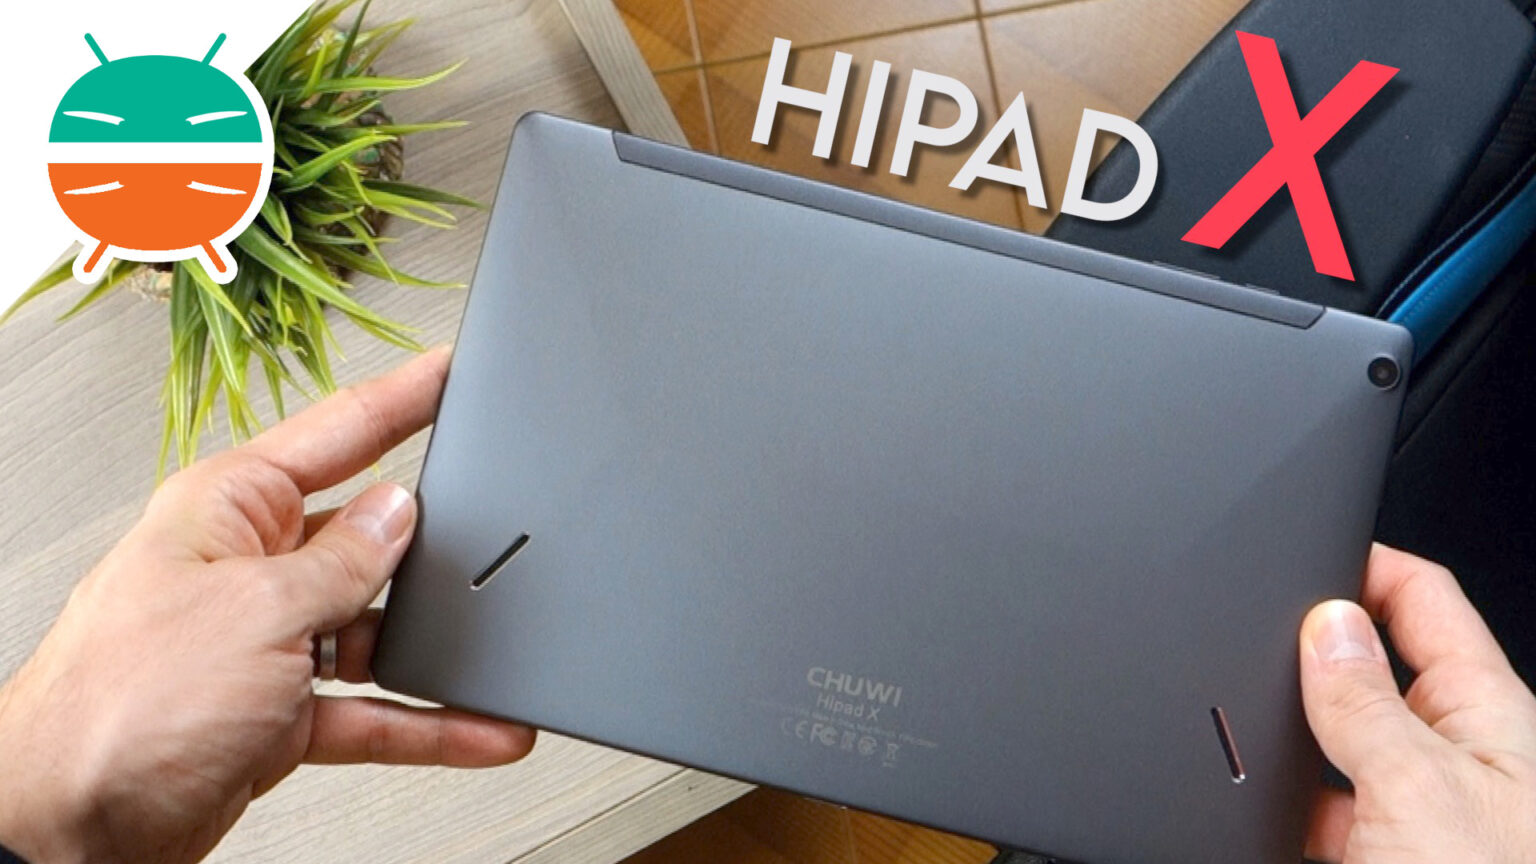 Revisión de Chuwi HiPad X: una tableta barata, que tiene todo lo que